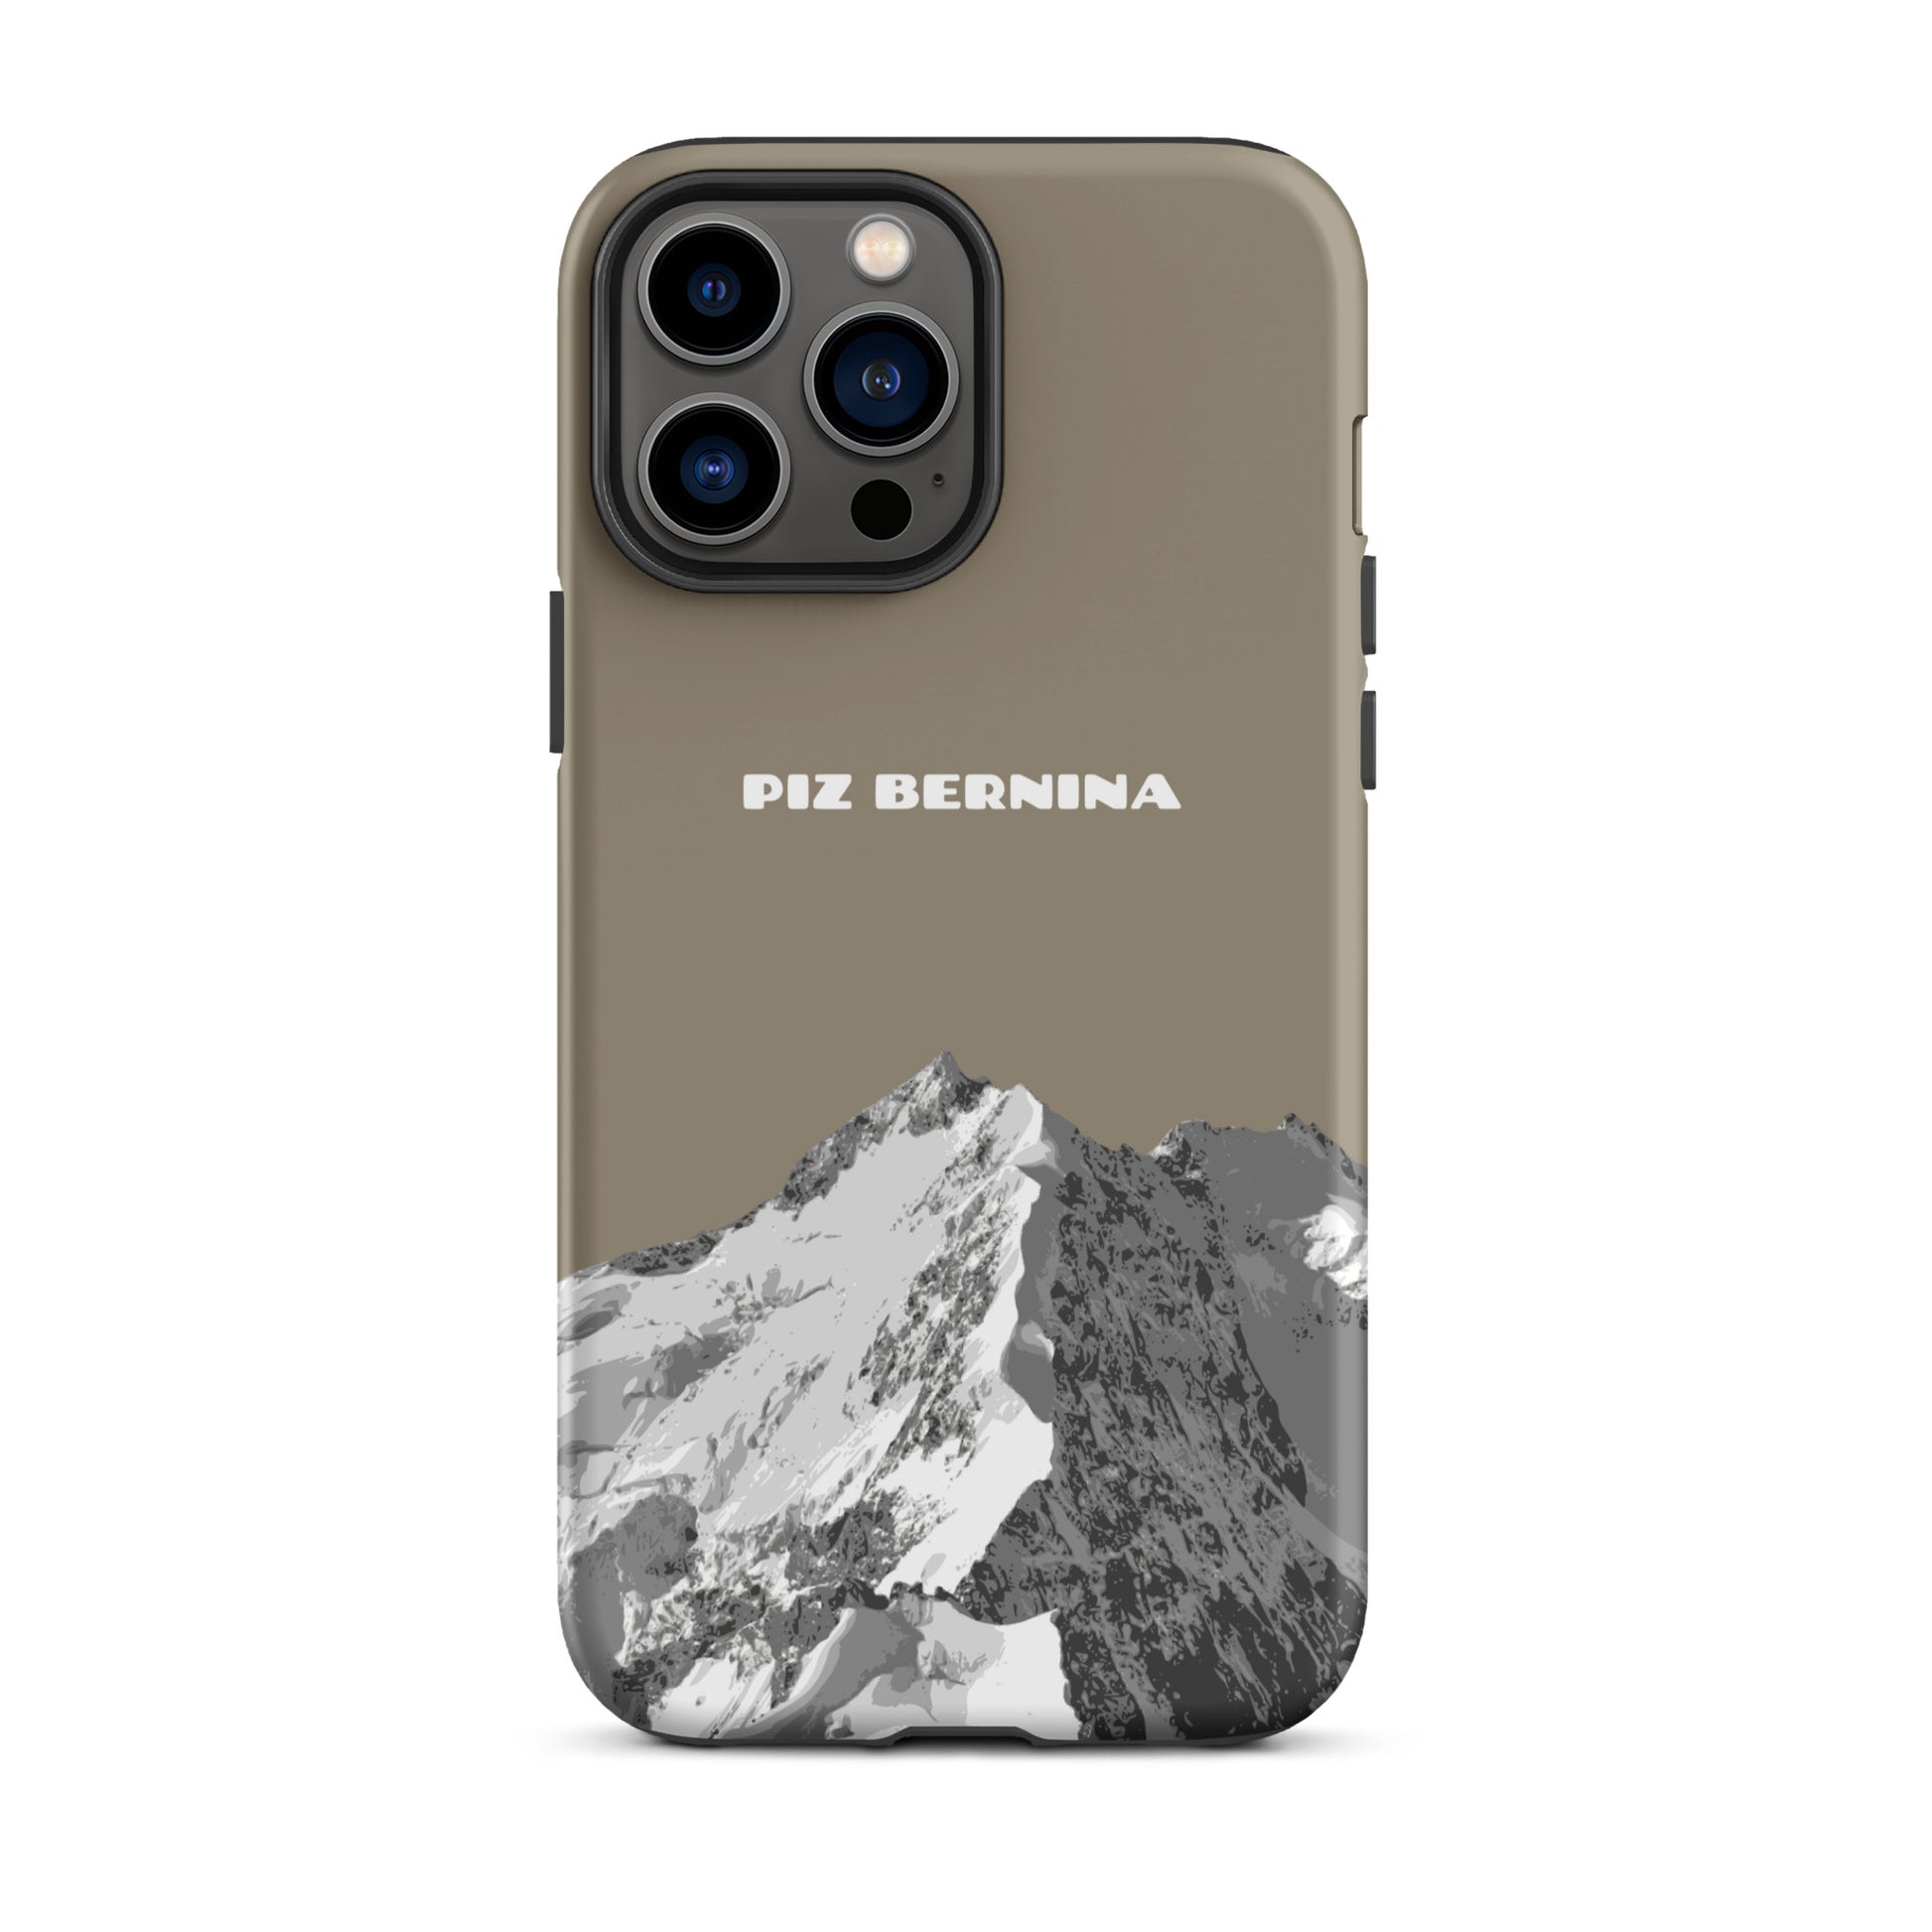 Hülle für das iPhone 13 Pro Max von Apple in der Farbe Graubraun, dass den Piz Bernina in Graubünden zeigt.